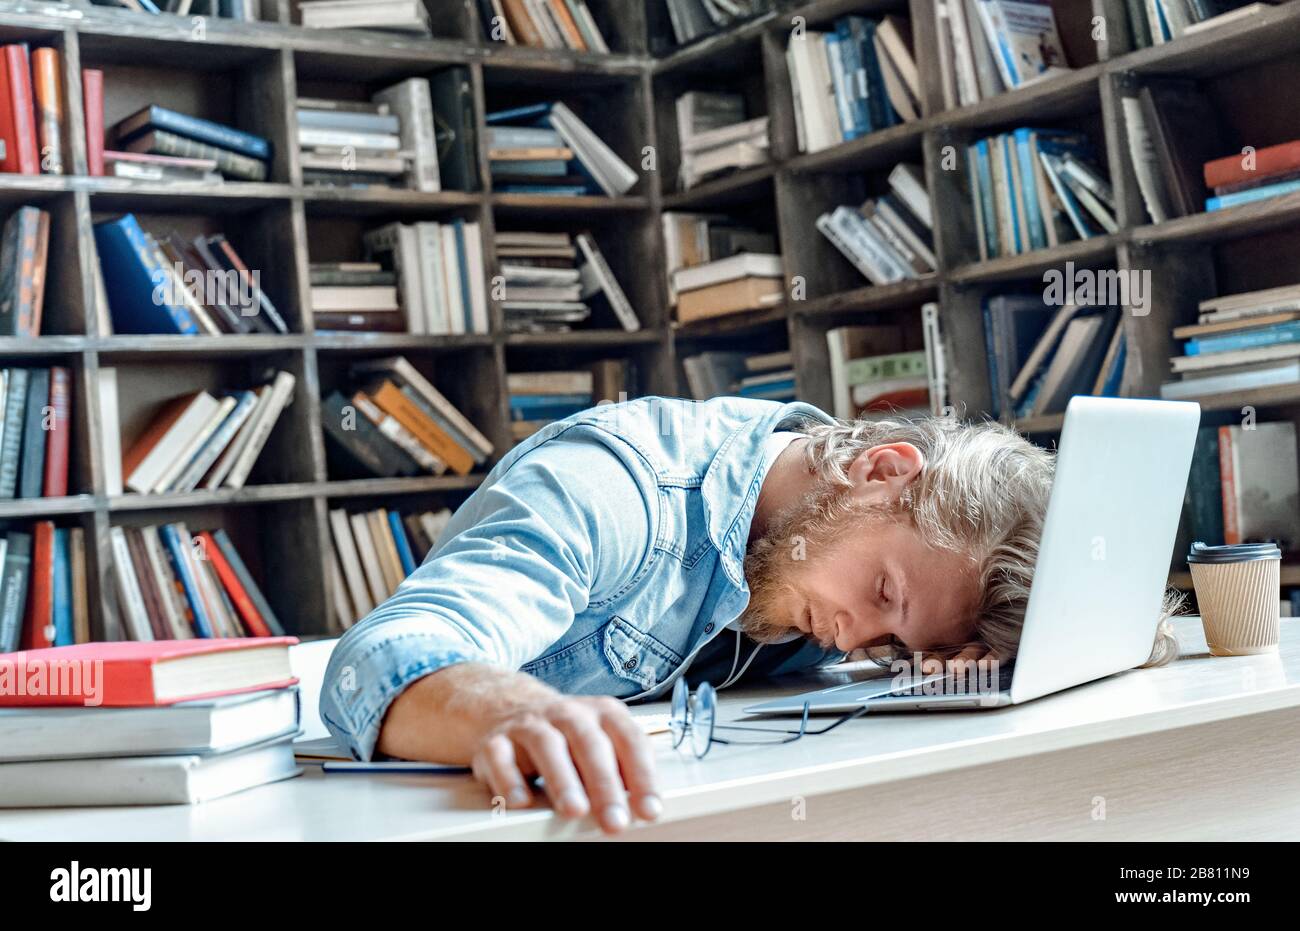 Divertido, cansado y soñoliento estudiante universitario durmiendo sentado en el escritorio de la biblioteca. Foto de stock